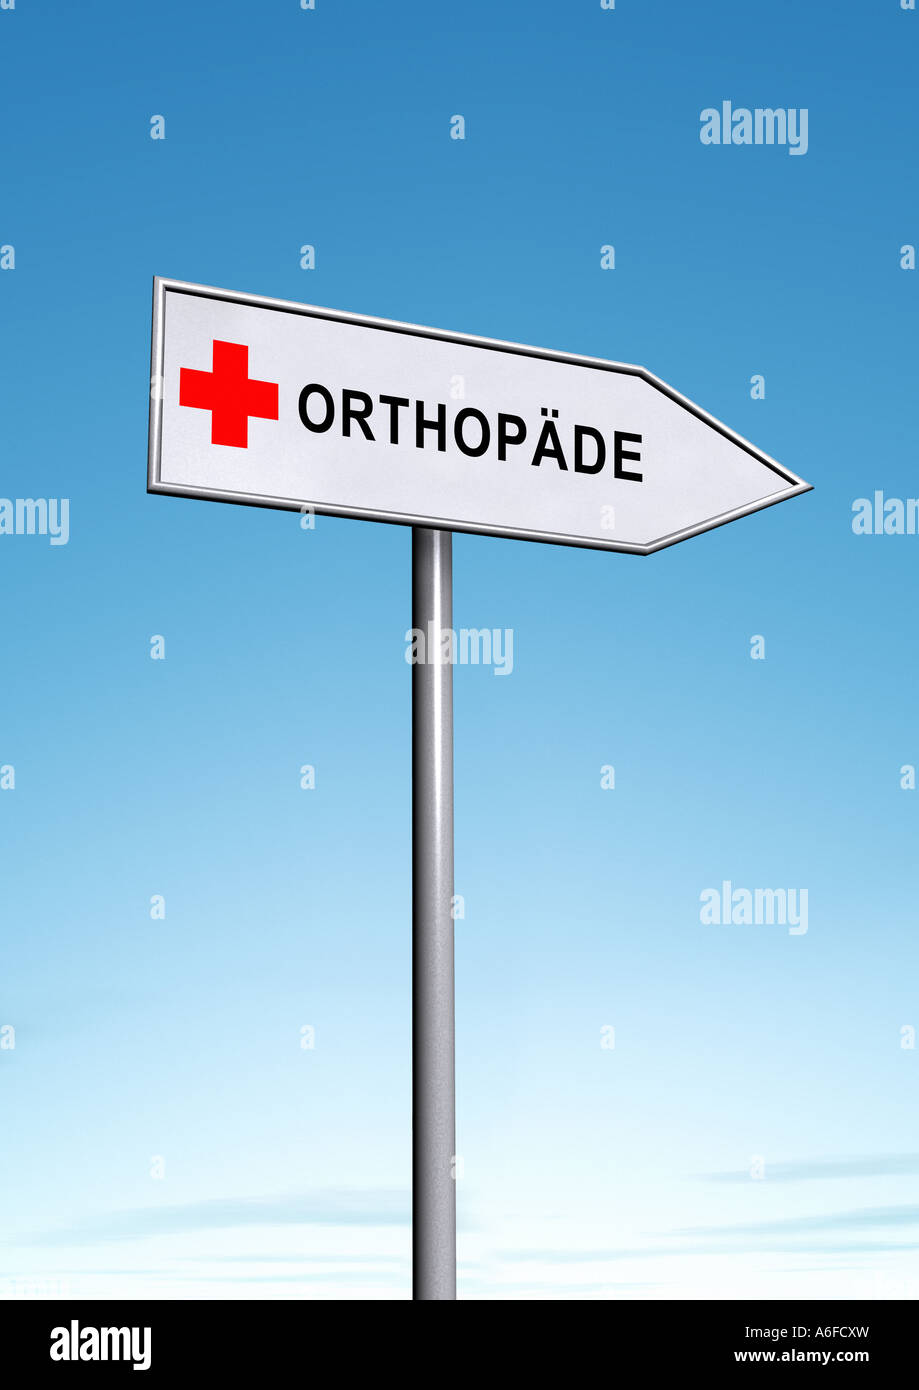 orthopaedist Orthopaede Stock Photo